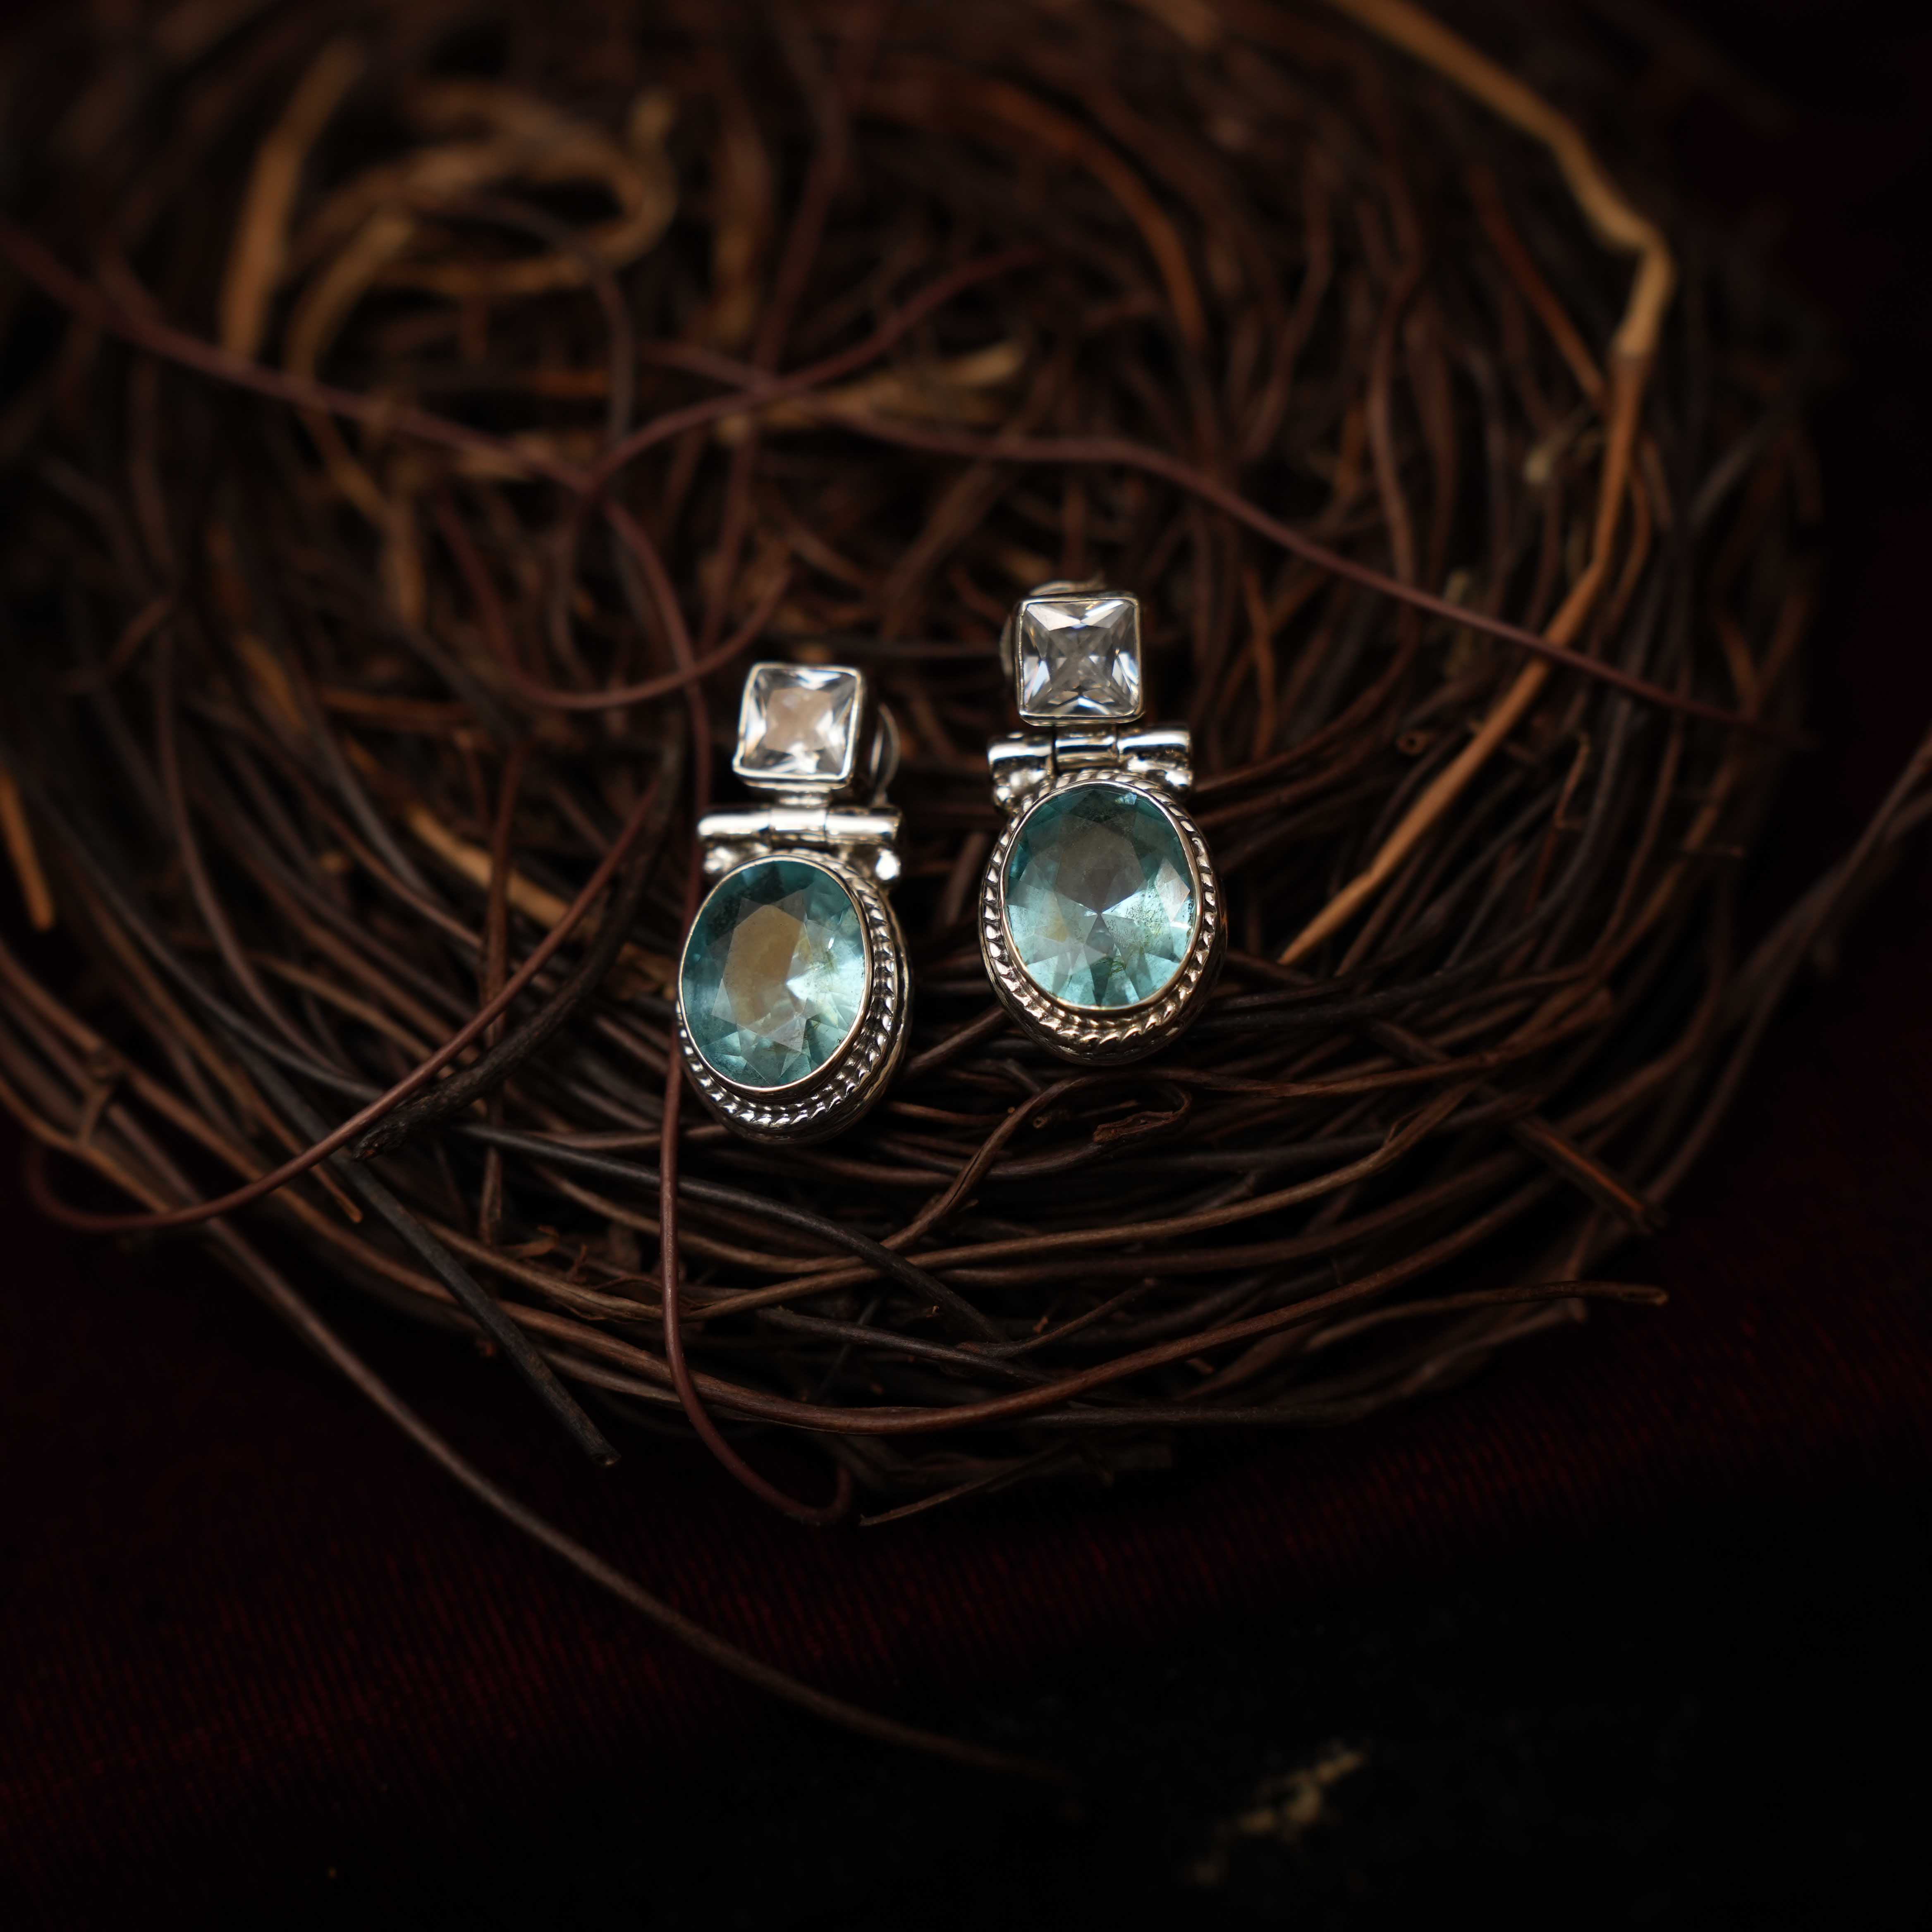 Radhi 925 Oxidized Silver Earrings - Sea Green